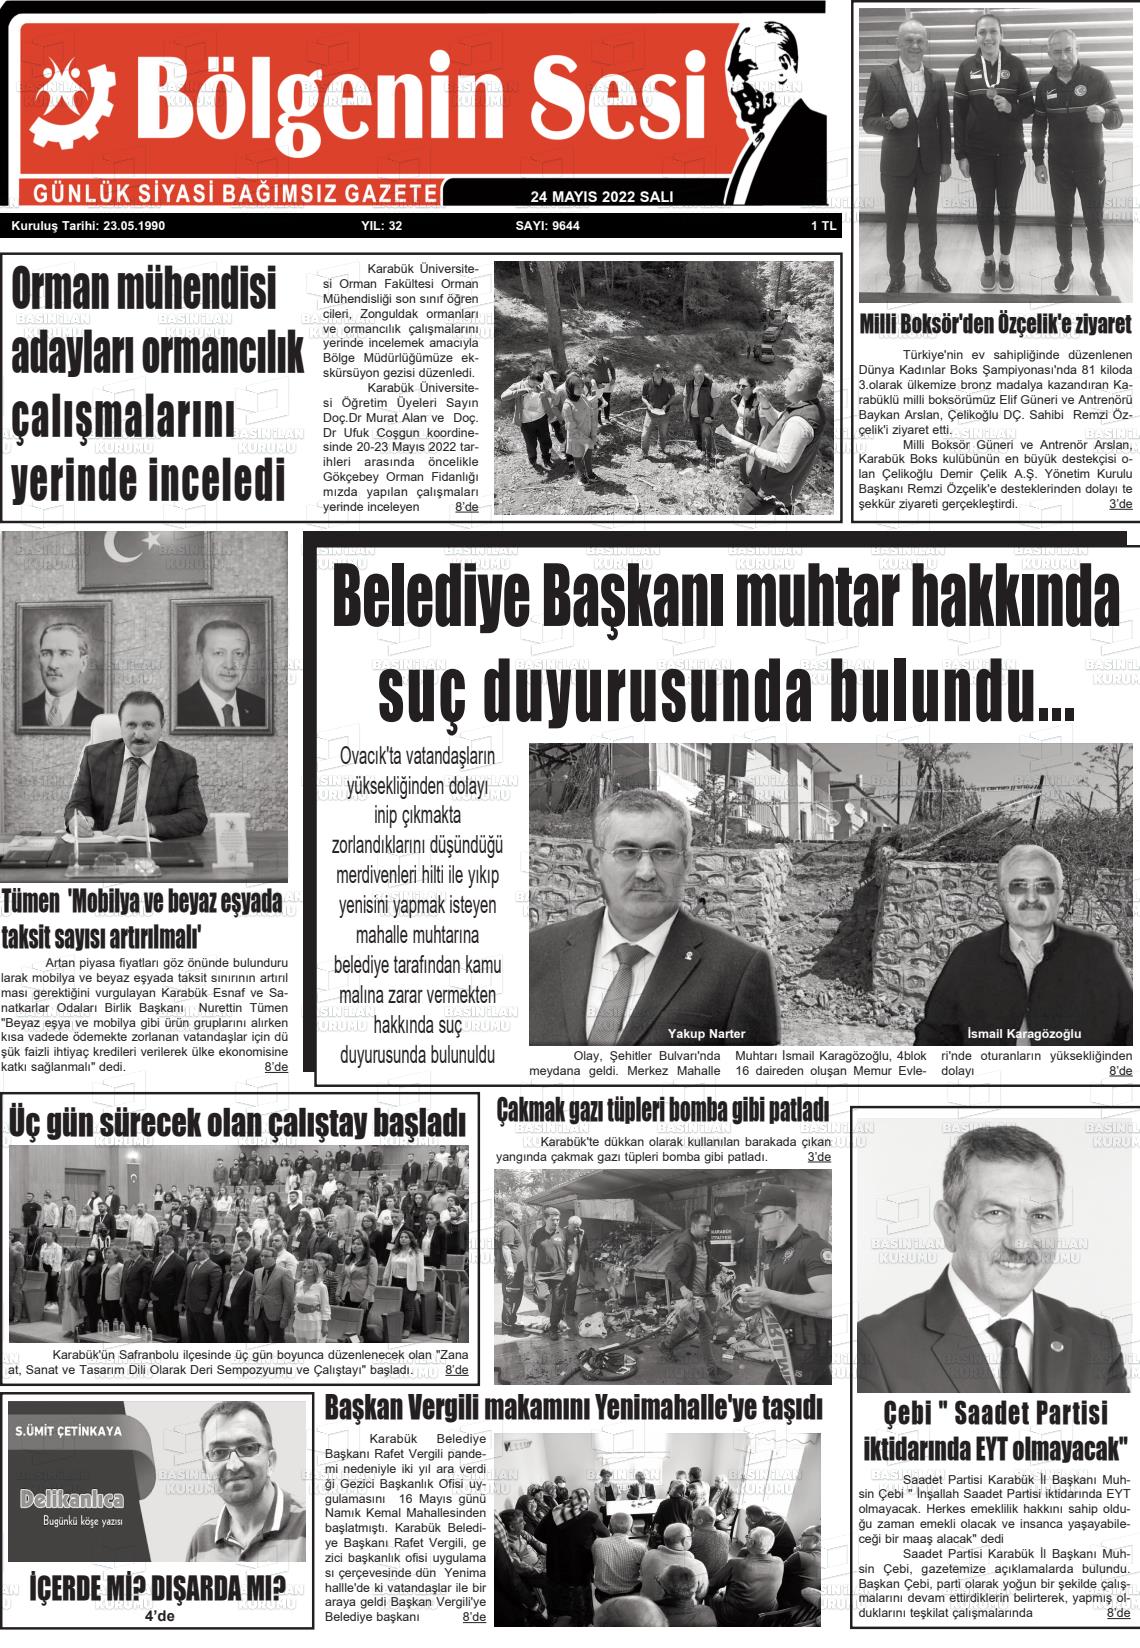 24 Mayıs 2022 Bölgenin Sesi Gazete Manşeti